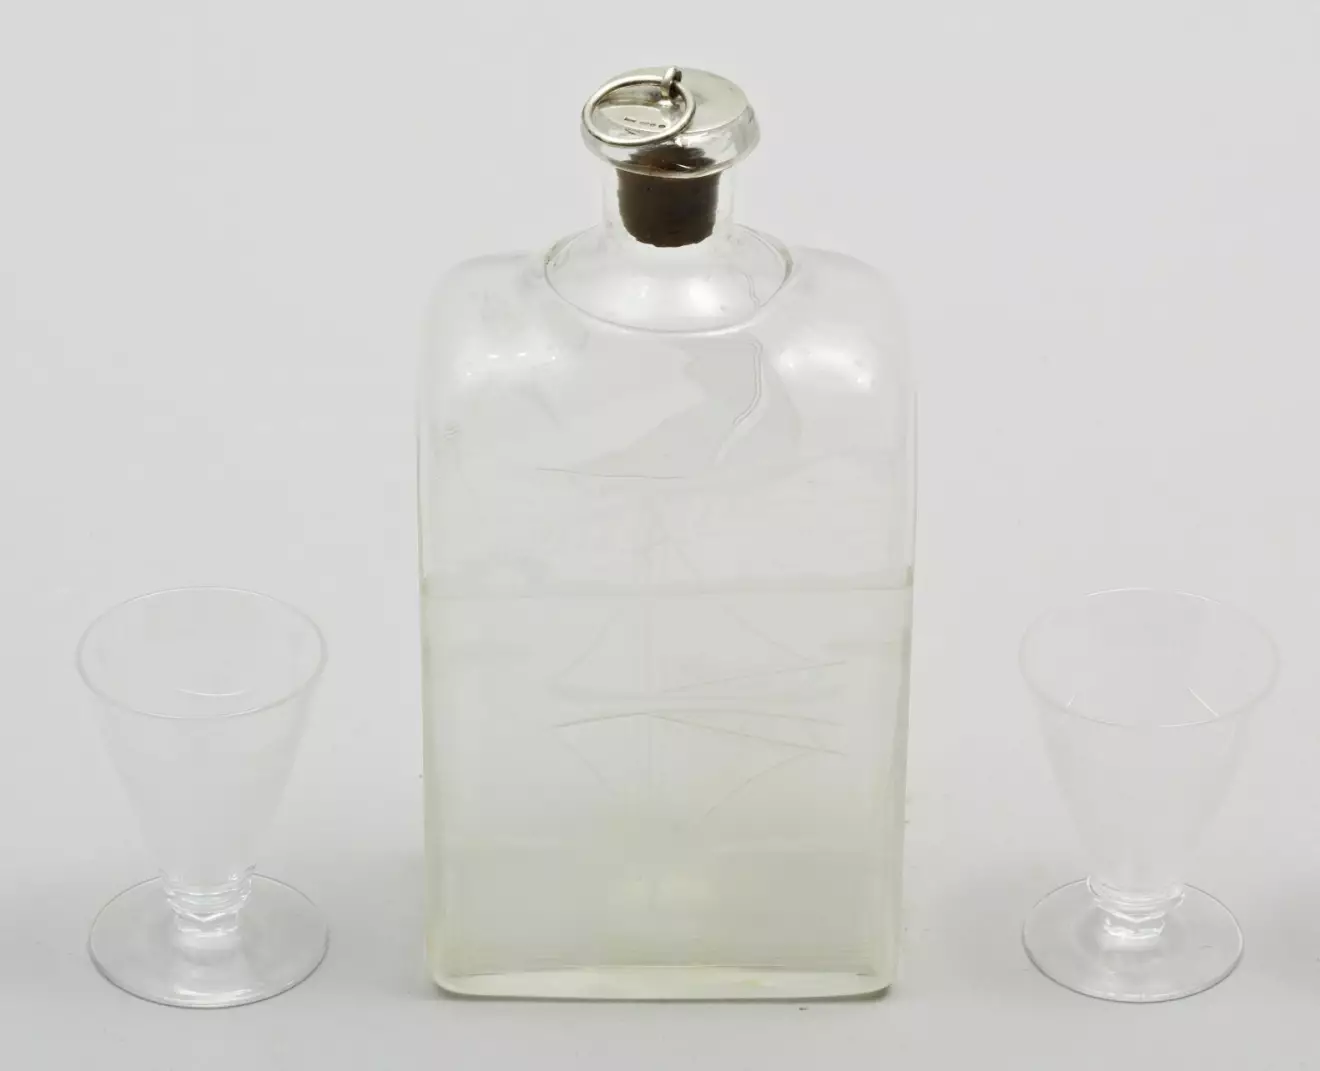 Edvard Hald formgav den vackert graverade brännvinsflaskan med silverpropp på korken samt snapsglasen för Orrefors 1930. Flaskan är 21cm hög. 1100kr för flaska och glas på Uppsala Auktionskammare för ett antal år sedan.